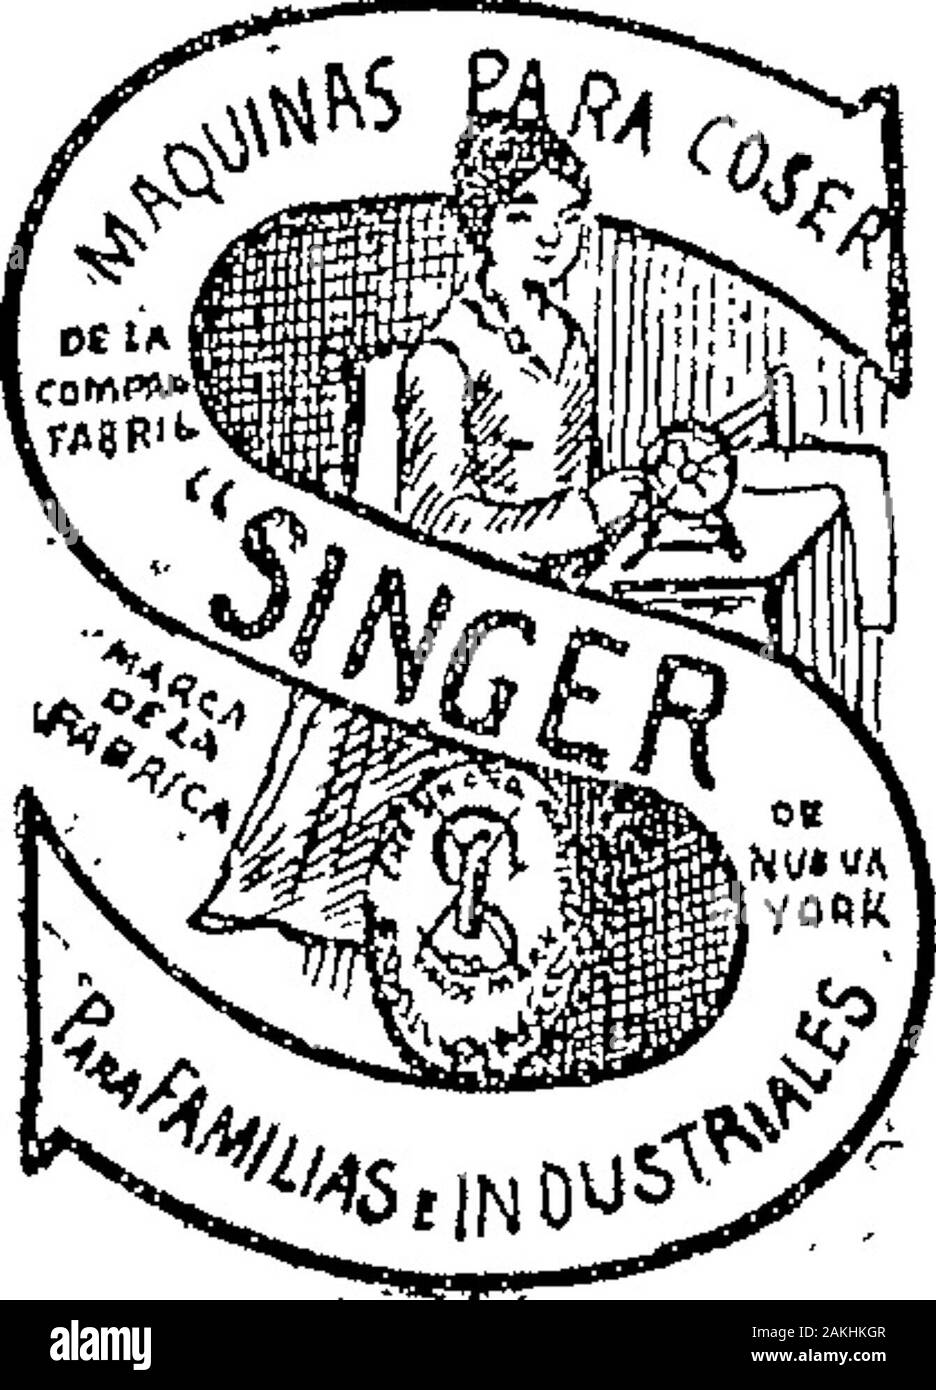 Boletín Oficial de la República Argentina1910 1ra sección . Acta No. 29.675 Mayo 10 de 1910.—The Singer Manu-facturing C.—Artículos de las clases 16y 52. v-17 mayo. Acta No. 29,669. Stock Photo